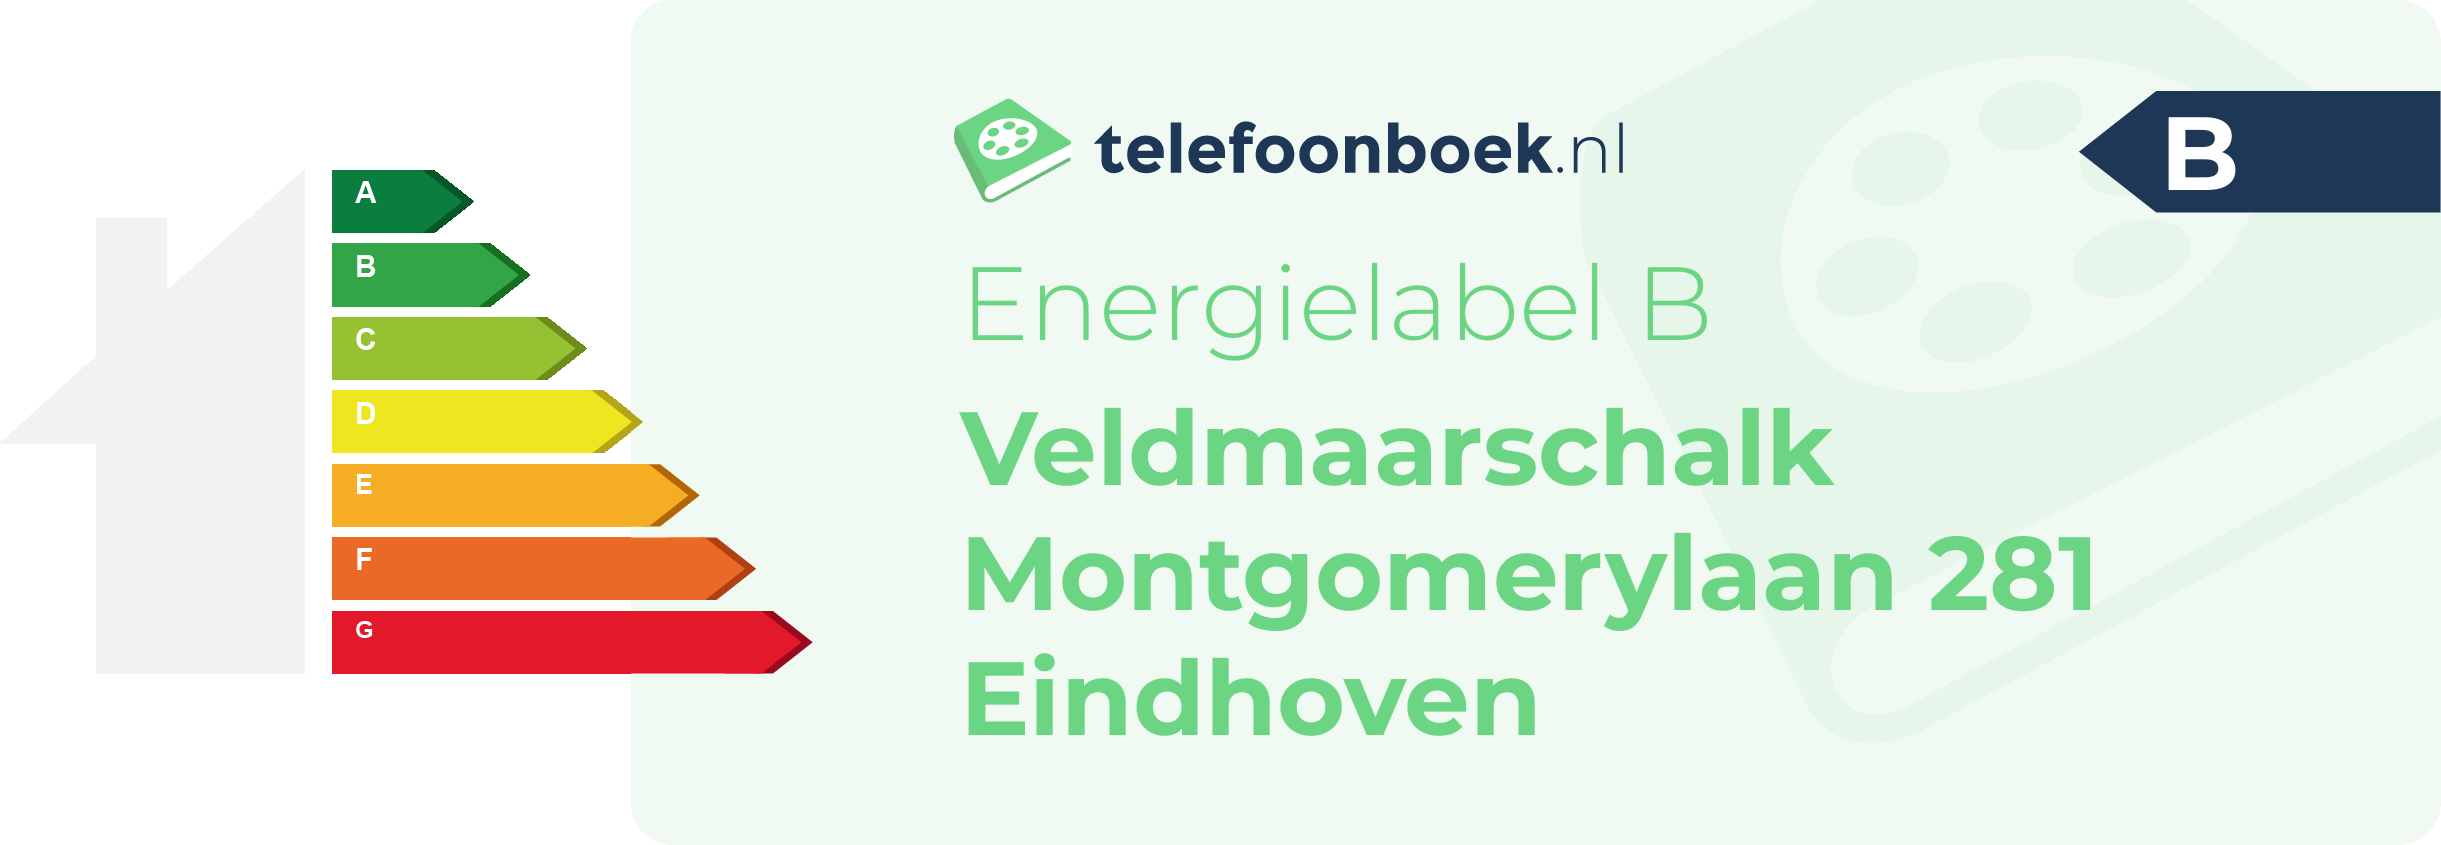 Energielabel Veldmaarschalk Montgomerylaan 281 Eindhoven